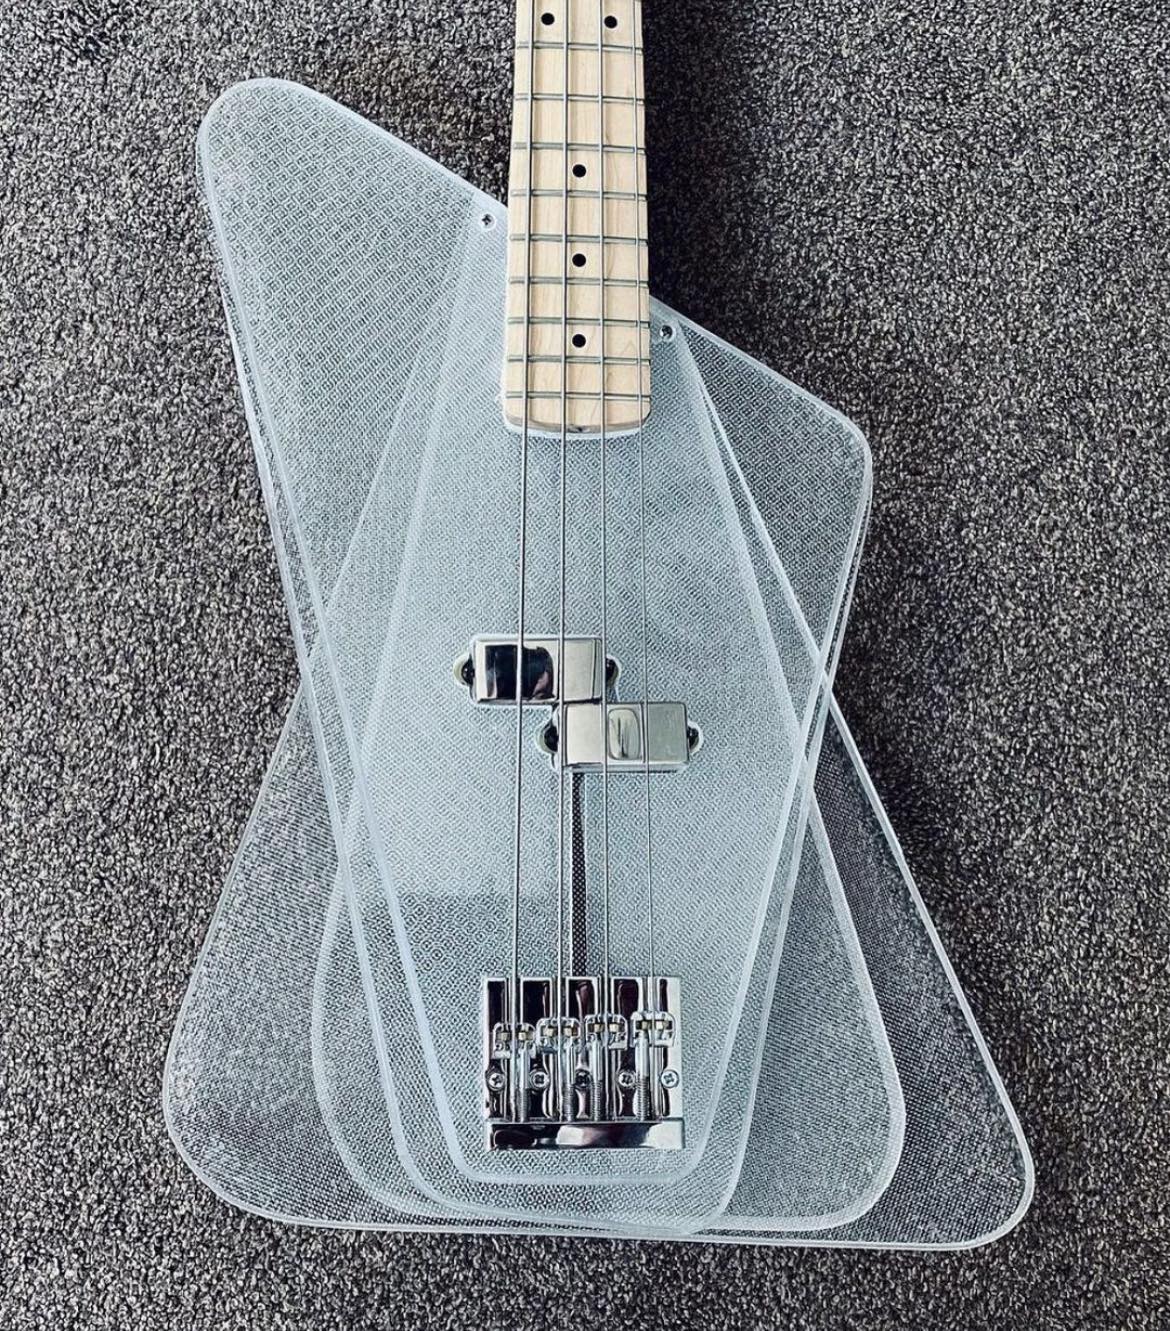 Foto: Instagram Brute Bass guitars